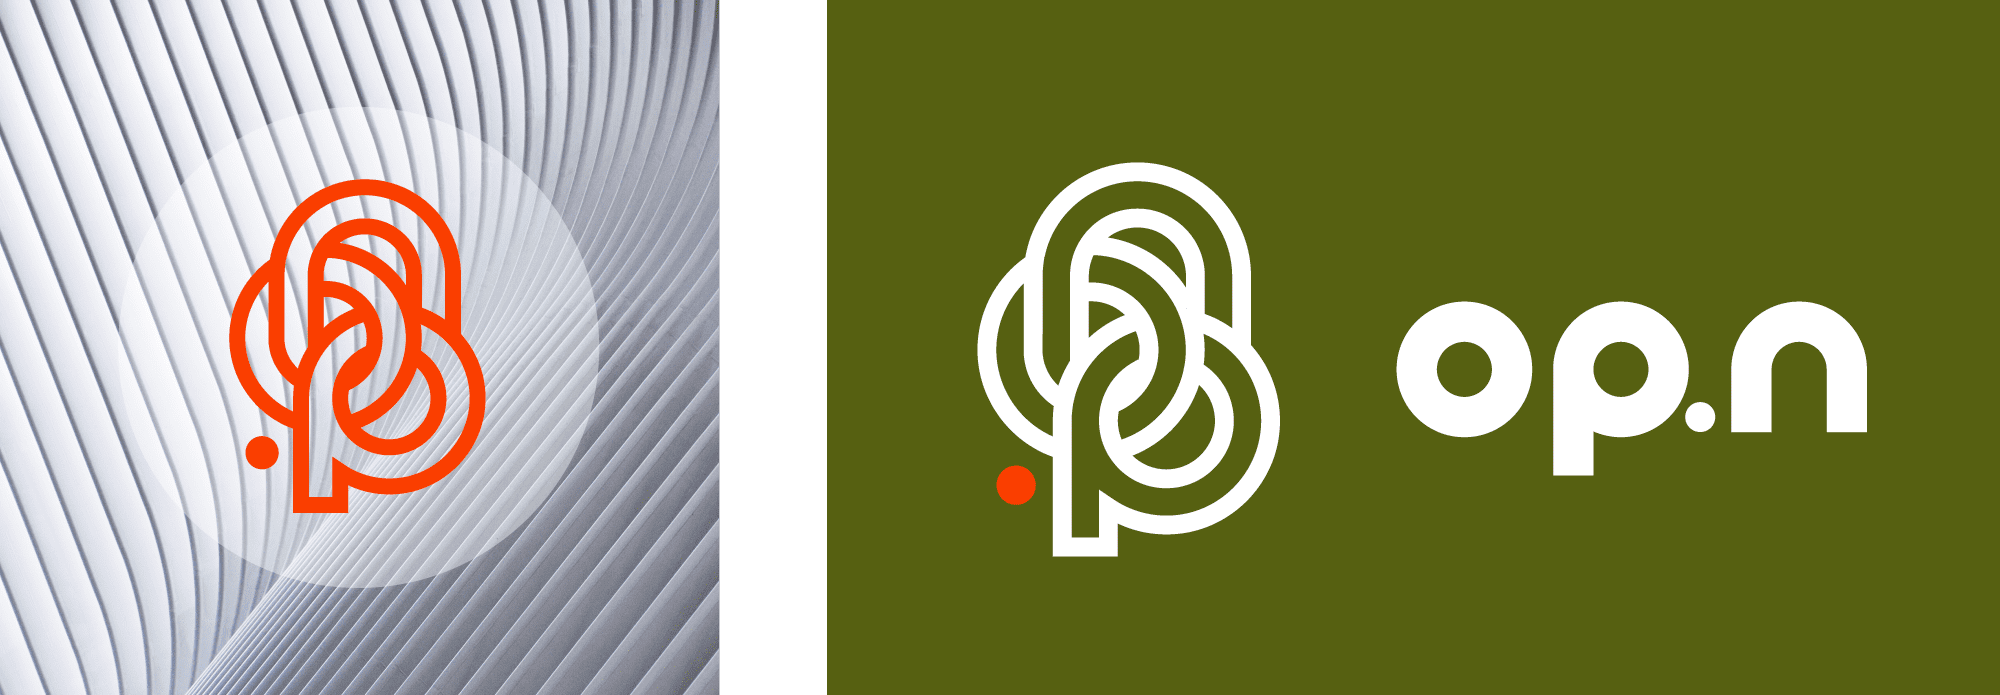 Présentation de deux déclinaison de couleurs pour le logo de l'entreprise OP.n, réalisé par l'agence de communication ÈS.B Studio.